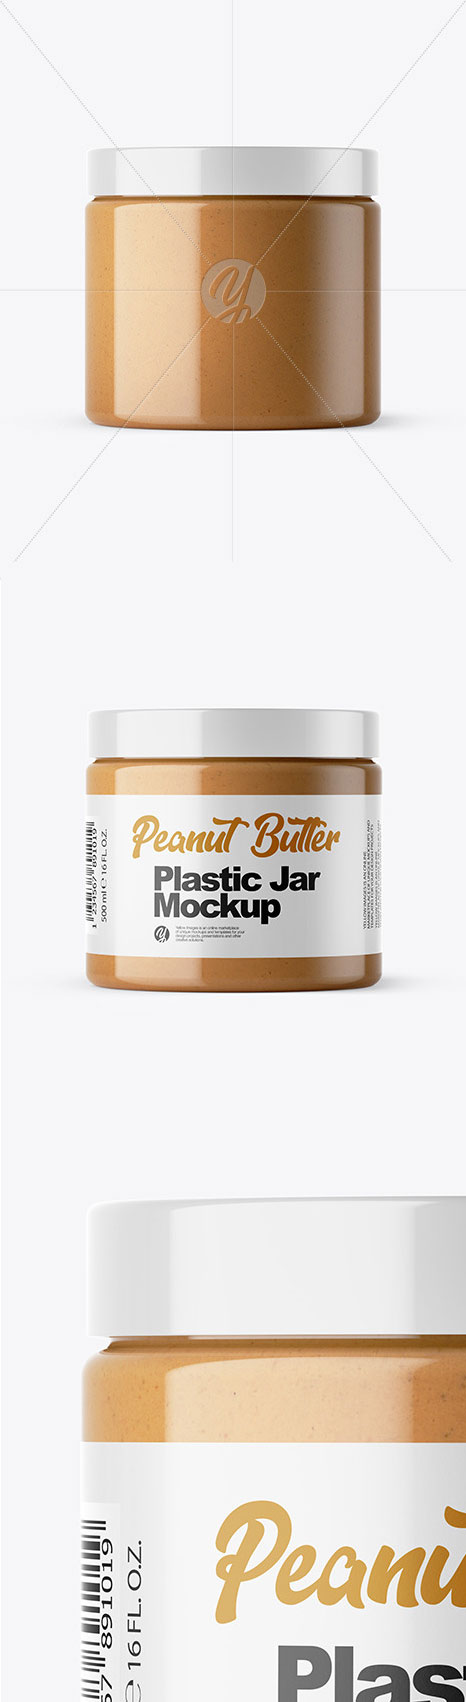 Peanut Butter Jar Mockup 46833